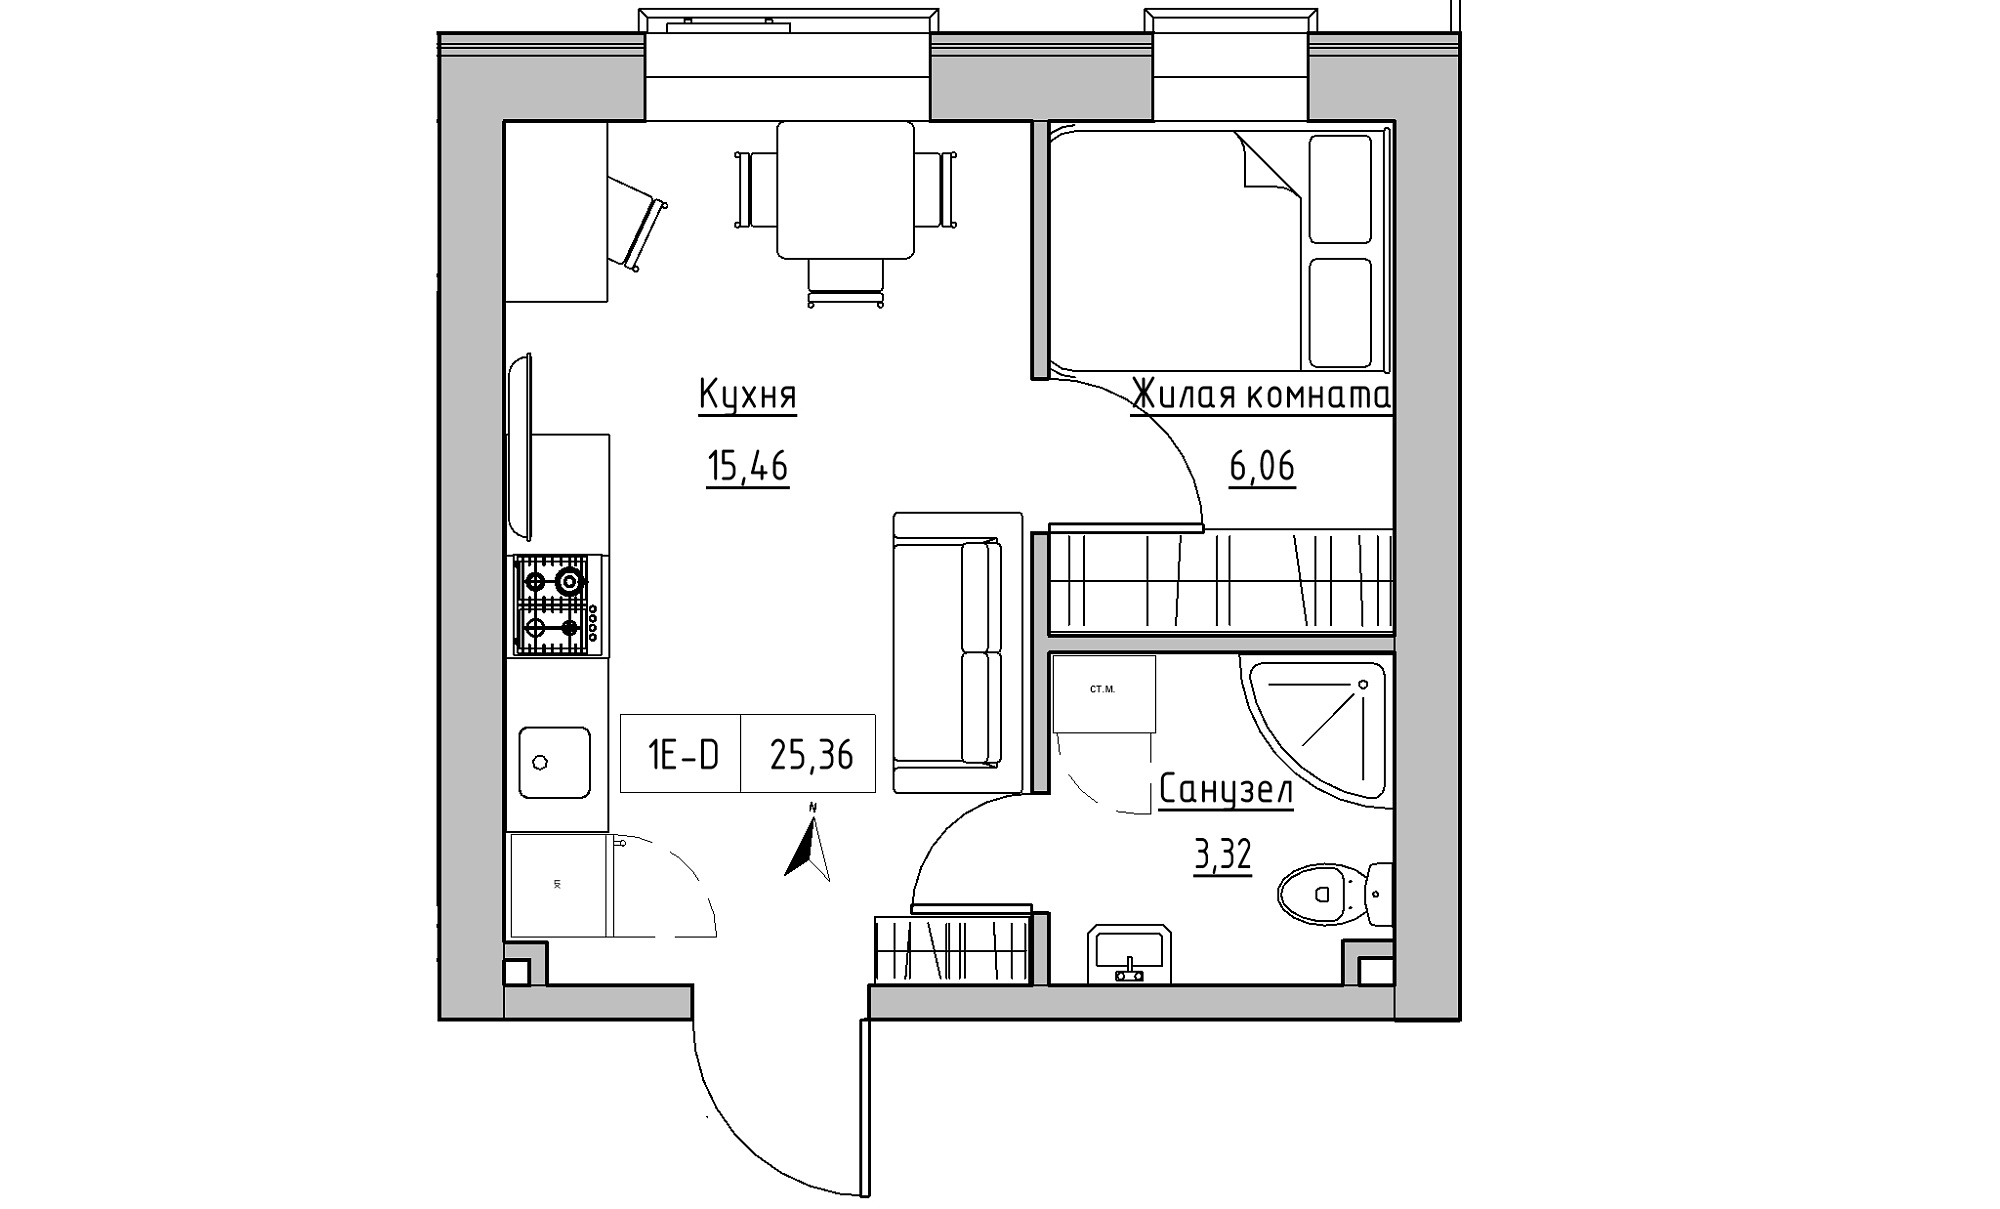 Планировка 1-к квартира площей 25.36м2, KS-016-03/0002.